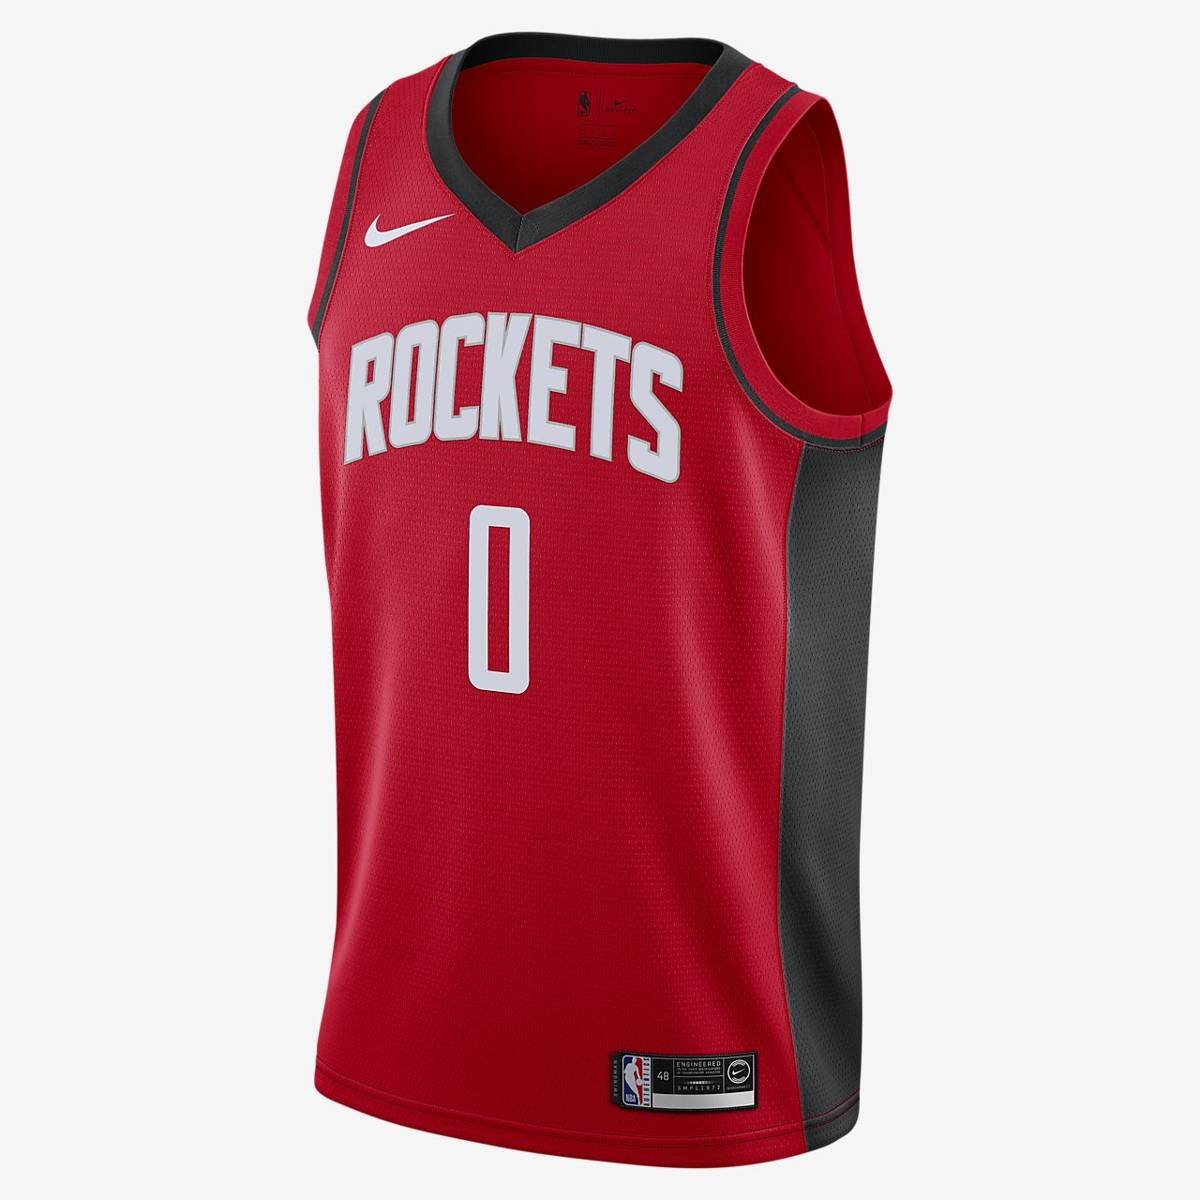 Koszulka Młodzieżowa Nike NBA Houston Rockets Westbrook Icon Edition - S